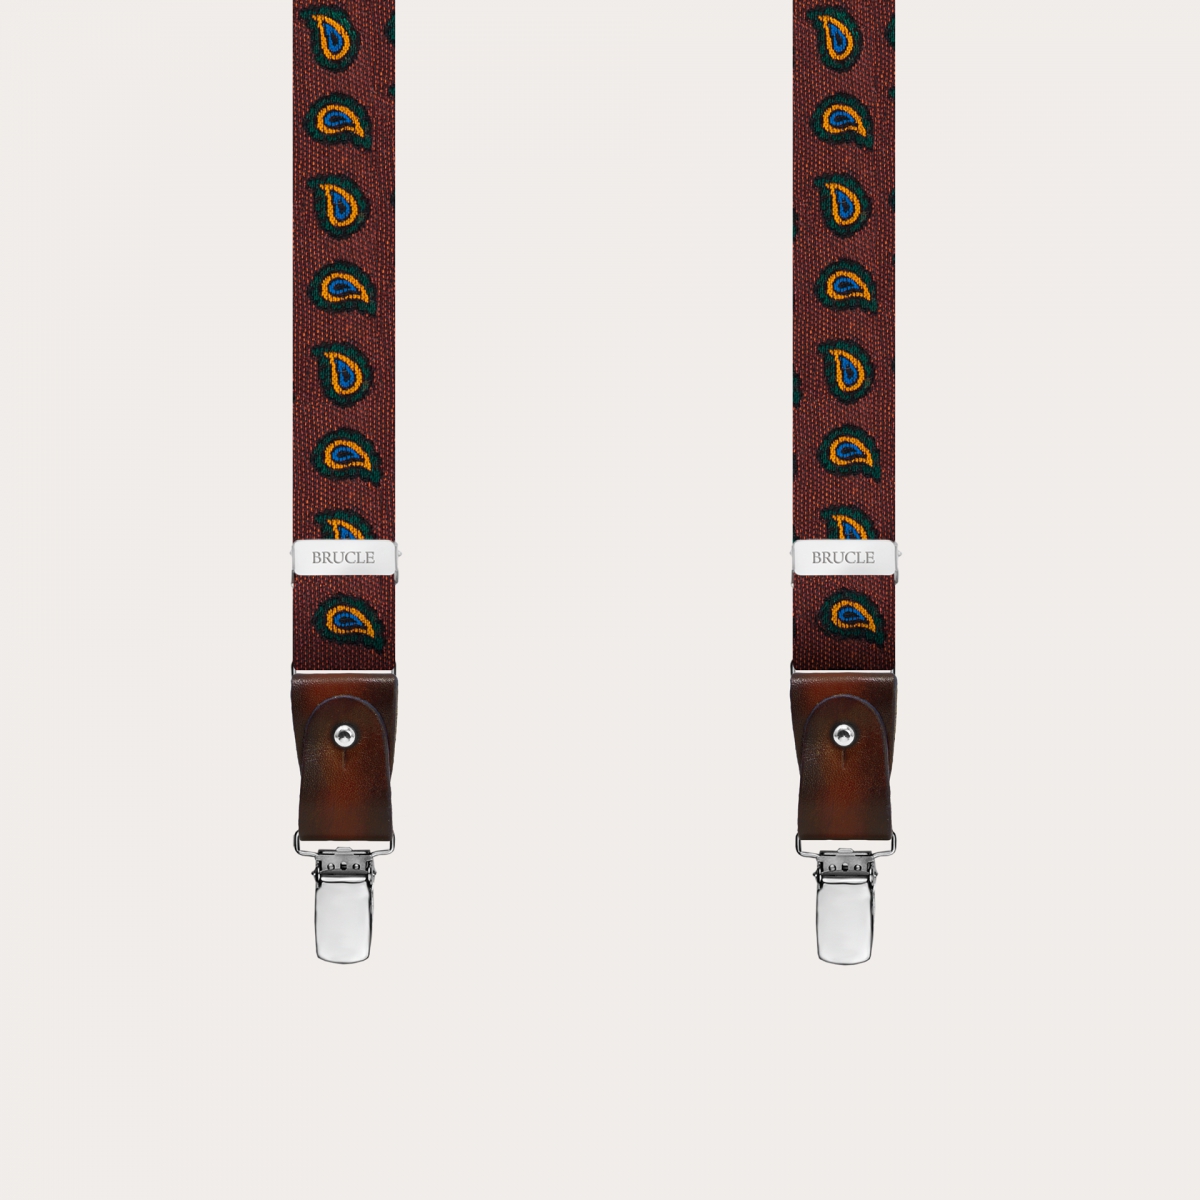 Bretelles fines en soie et coton avec motif paisley brun